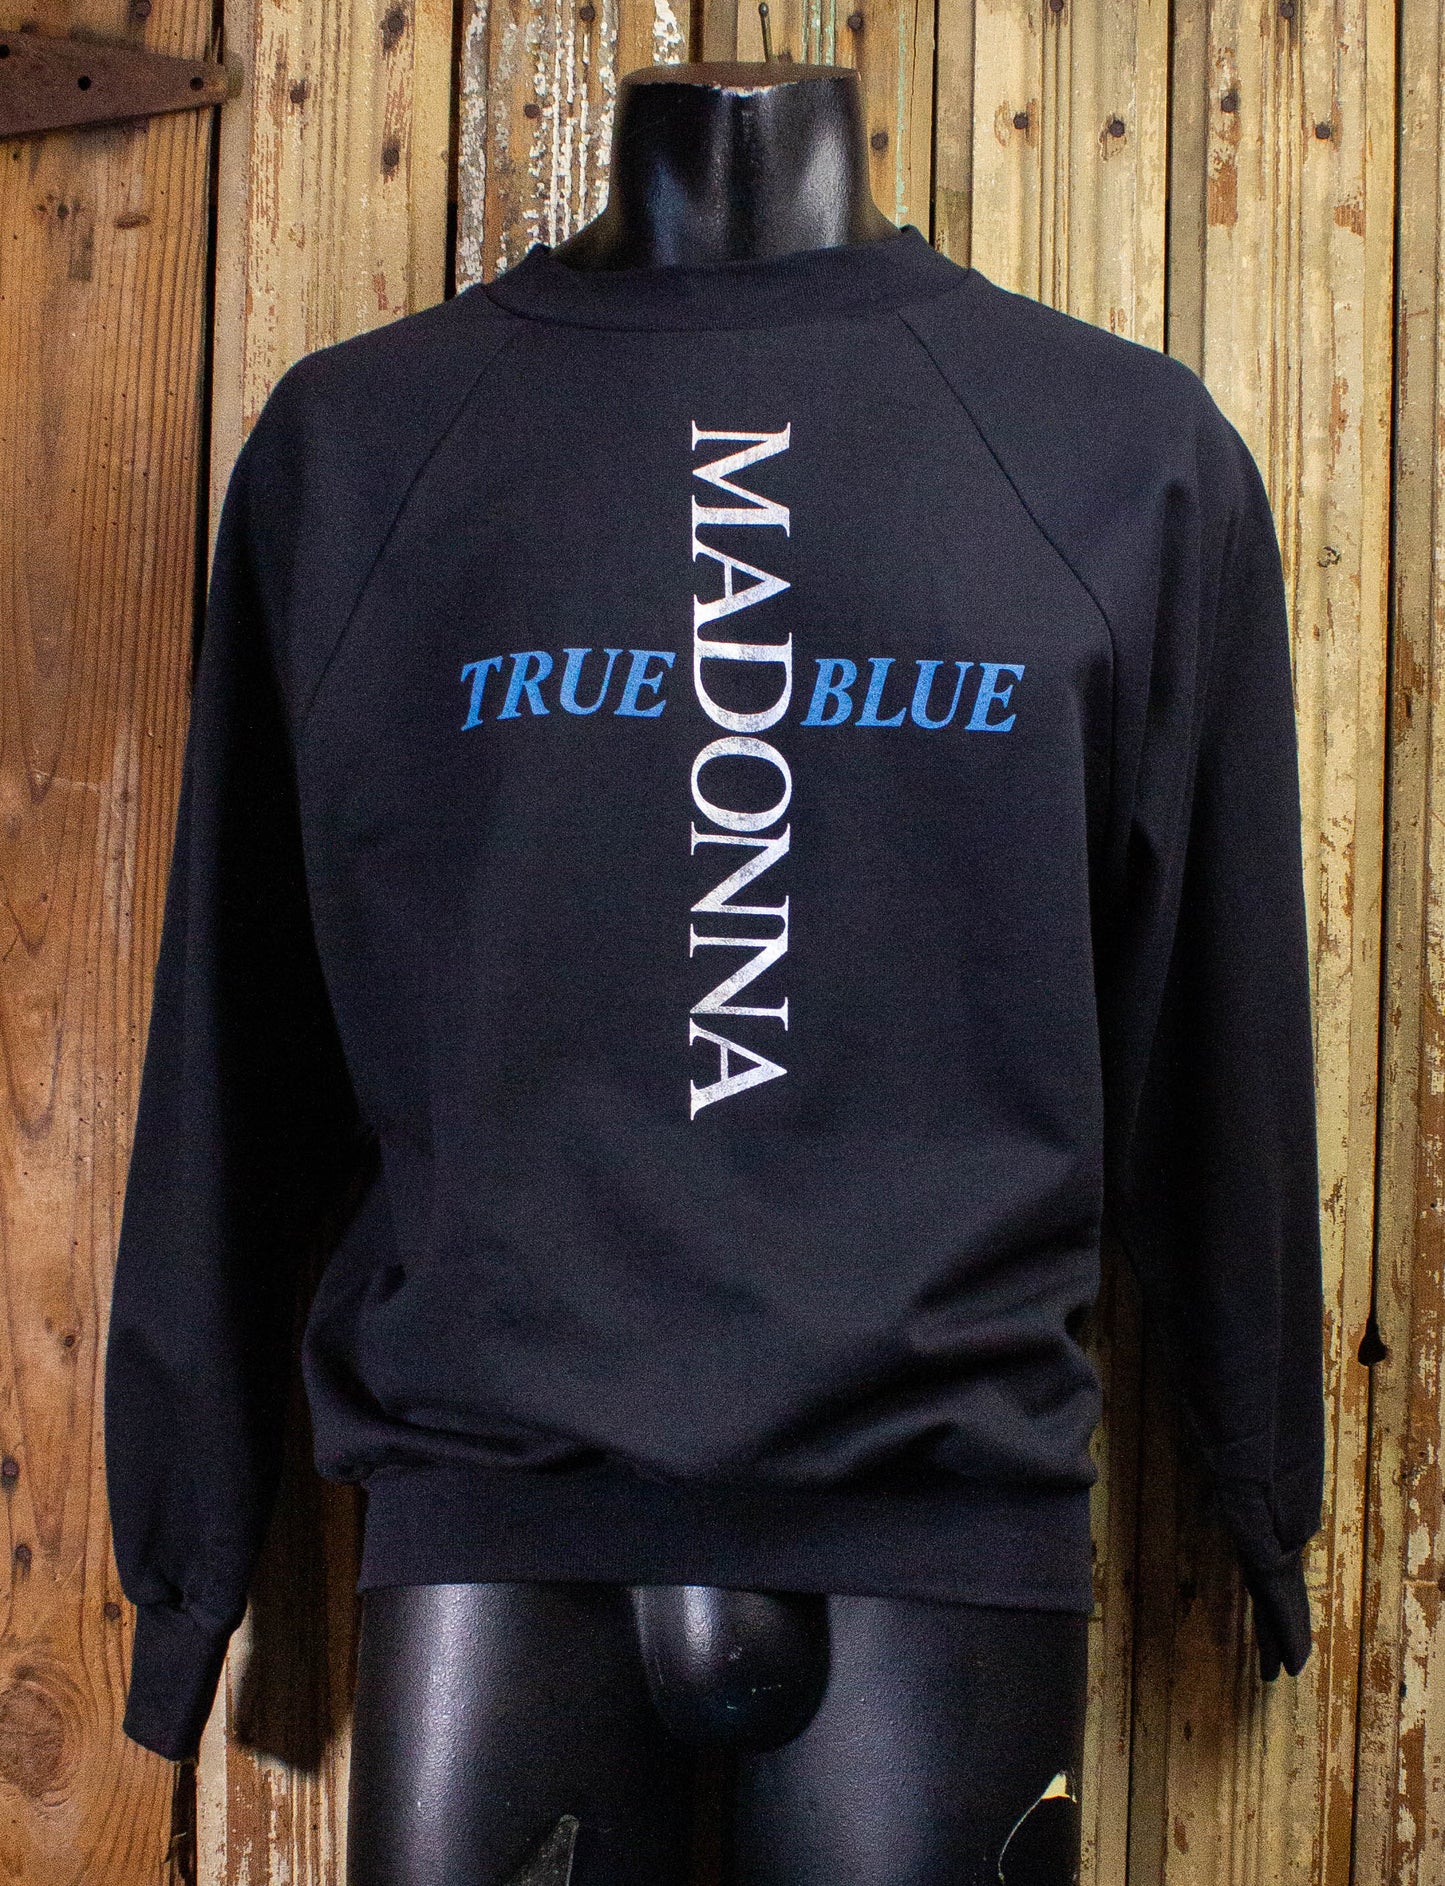 Vintage Madonna True Blue Concert Sweatshirt 1986 Black Large